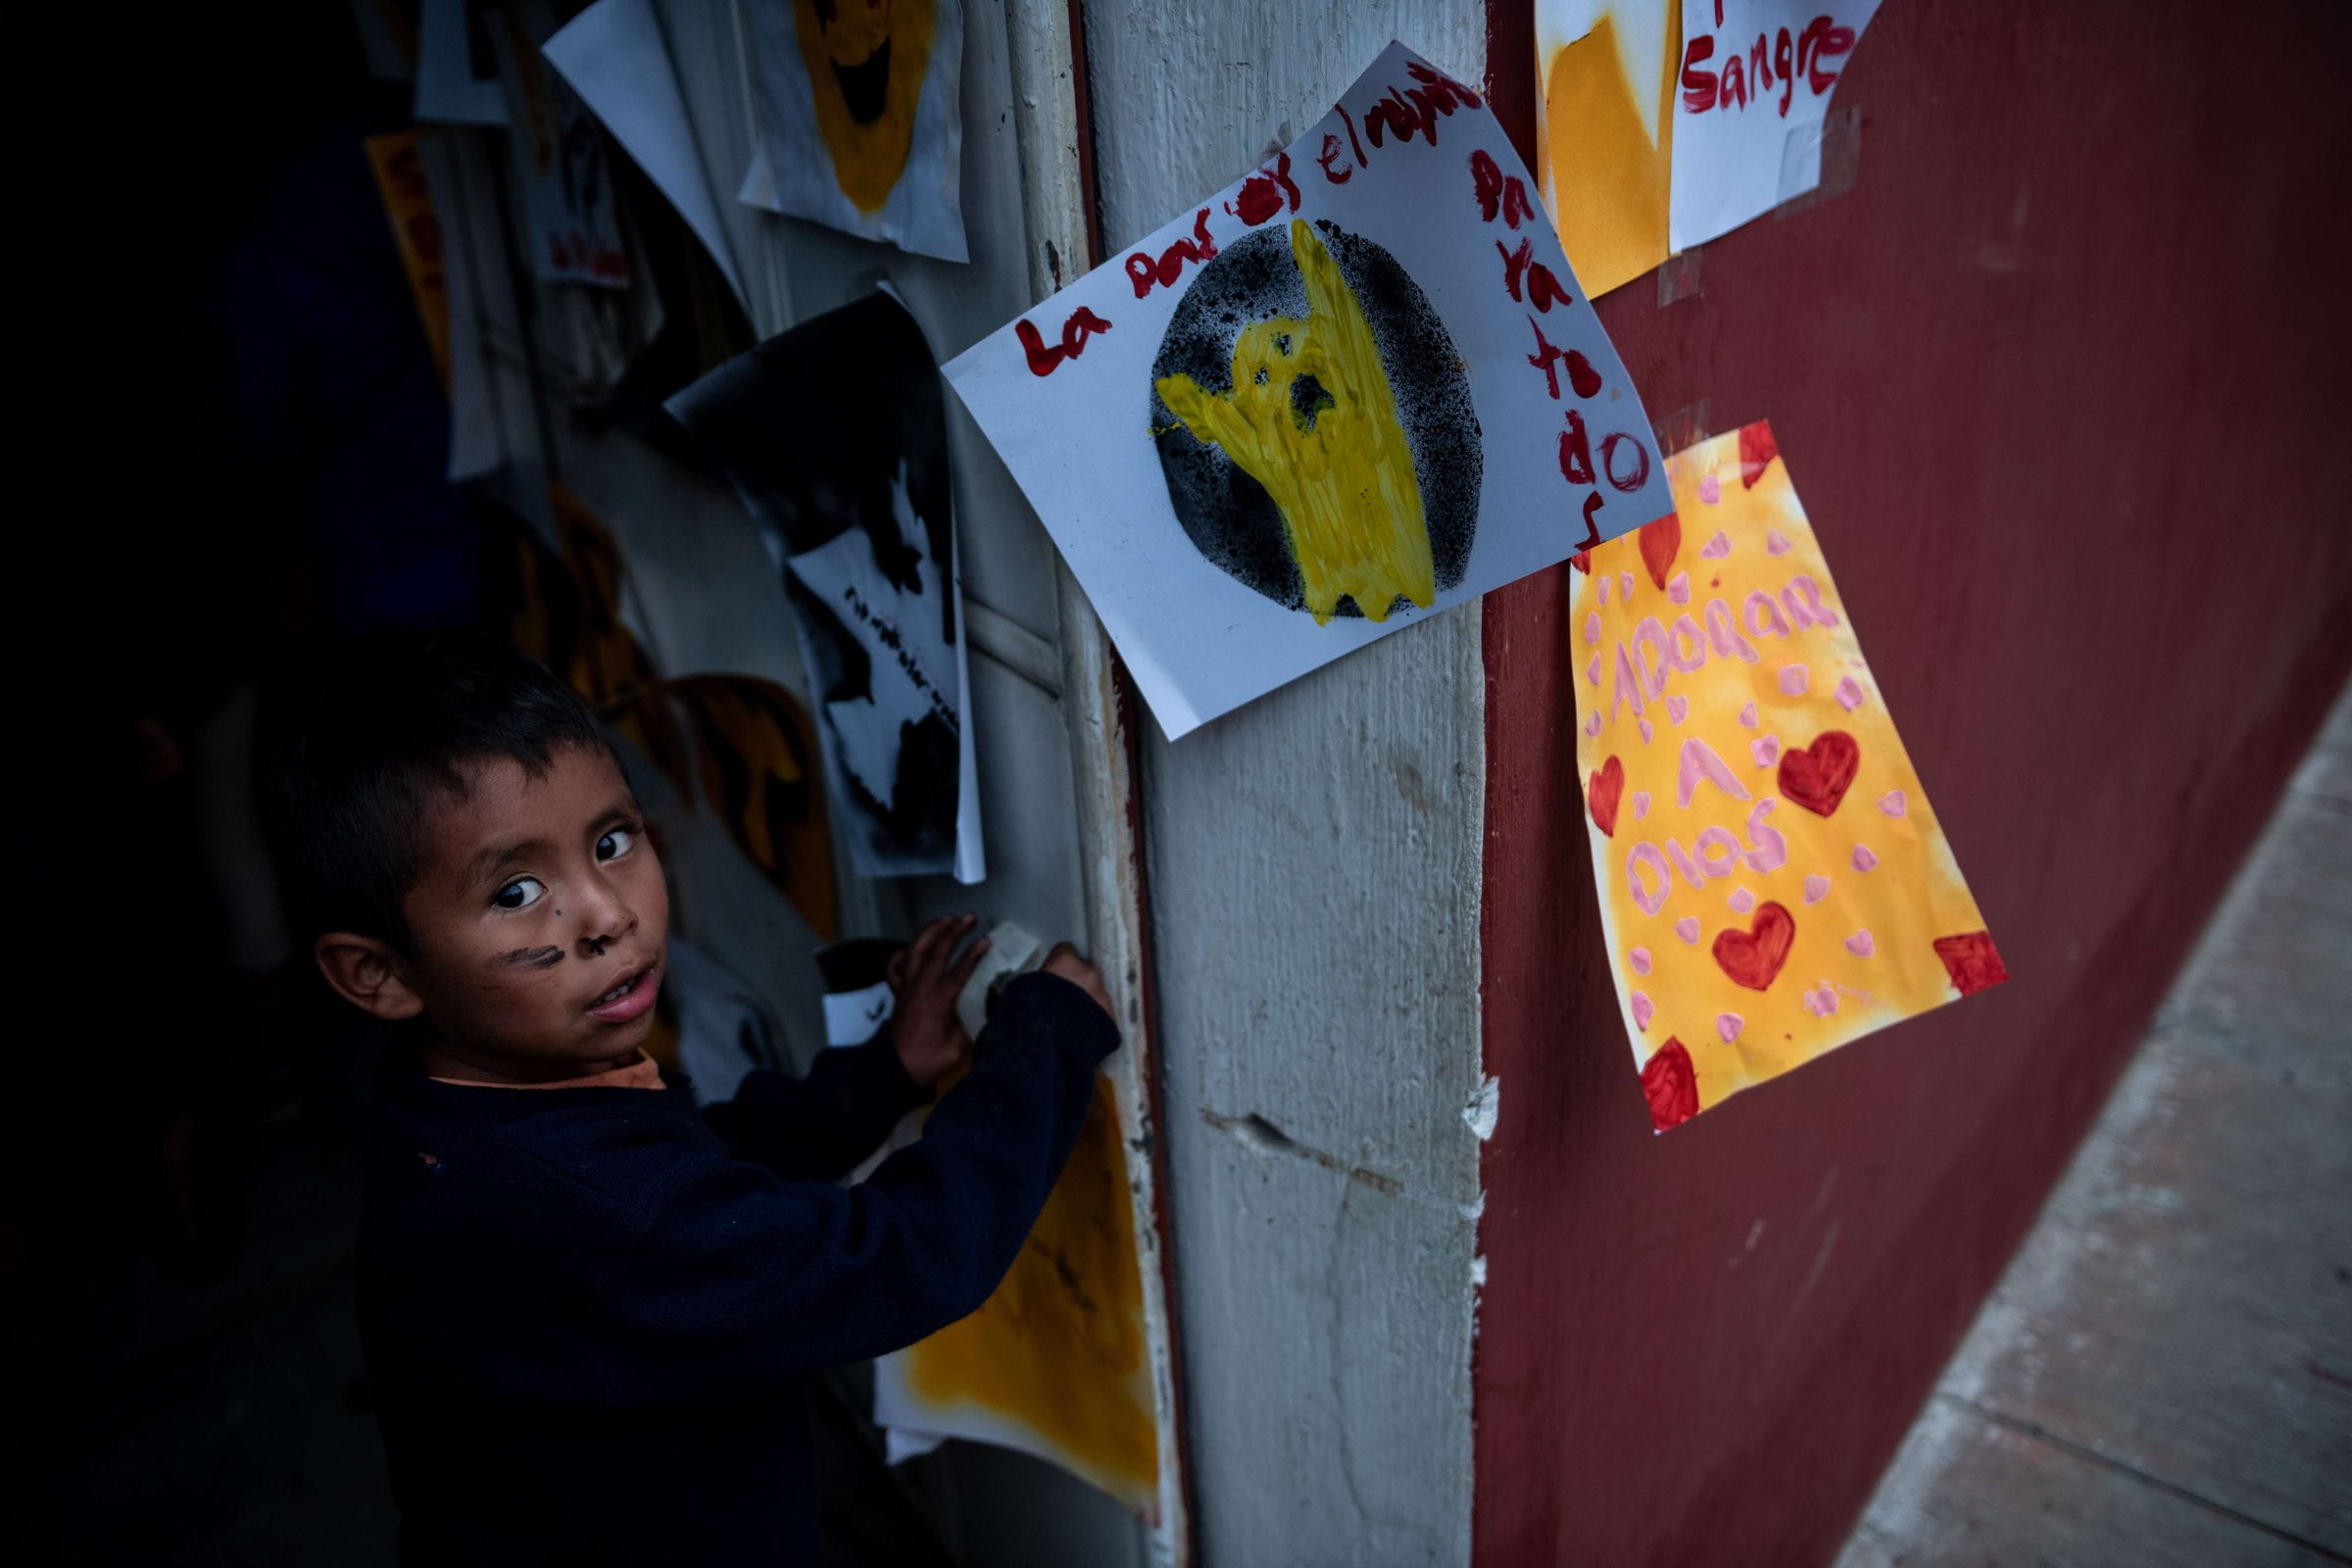 Reportage Guatemala; Foto: Kind hängt Bild auf (Quelle: Fabian Strauch / Kindernothilfe)